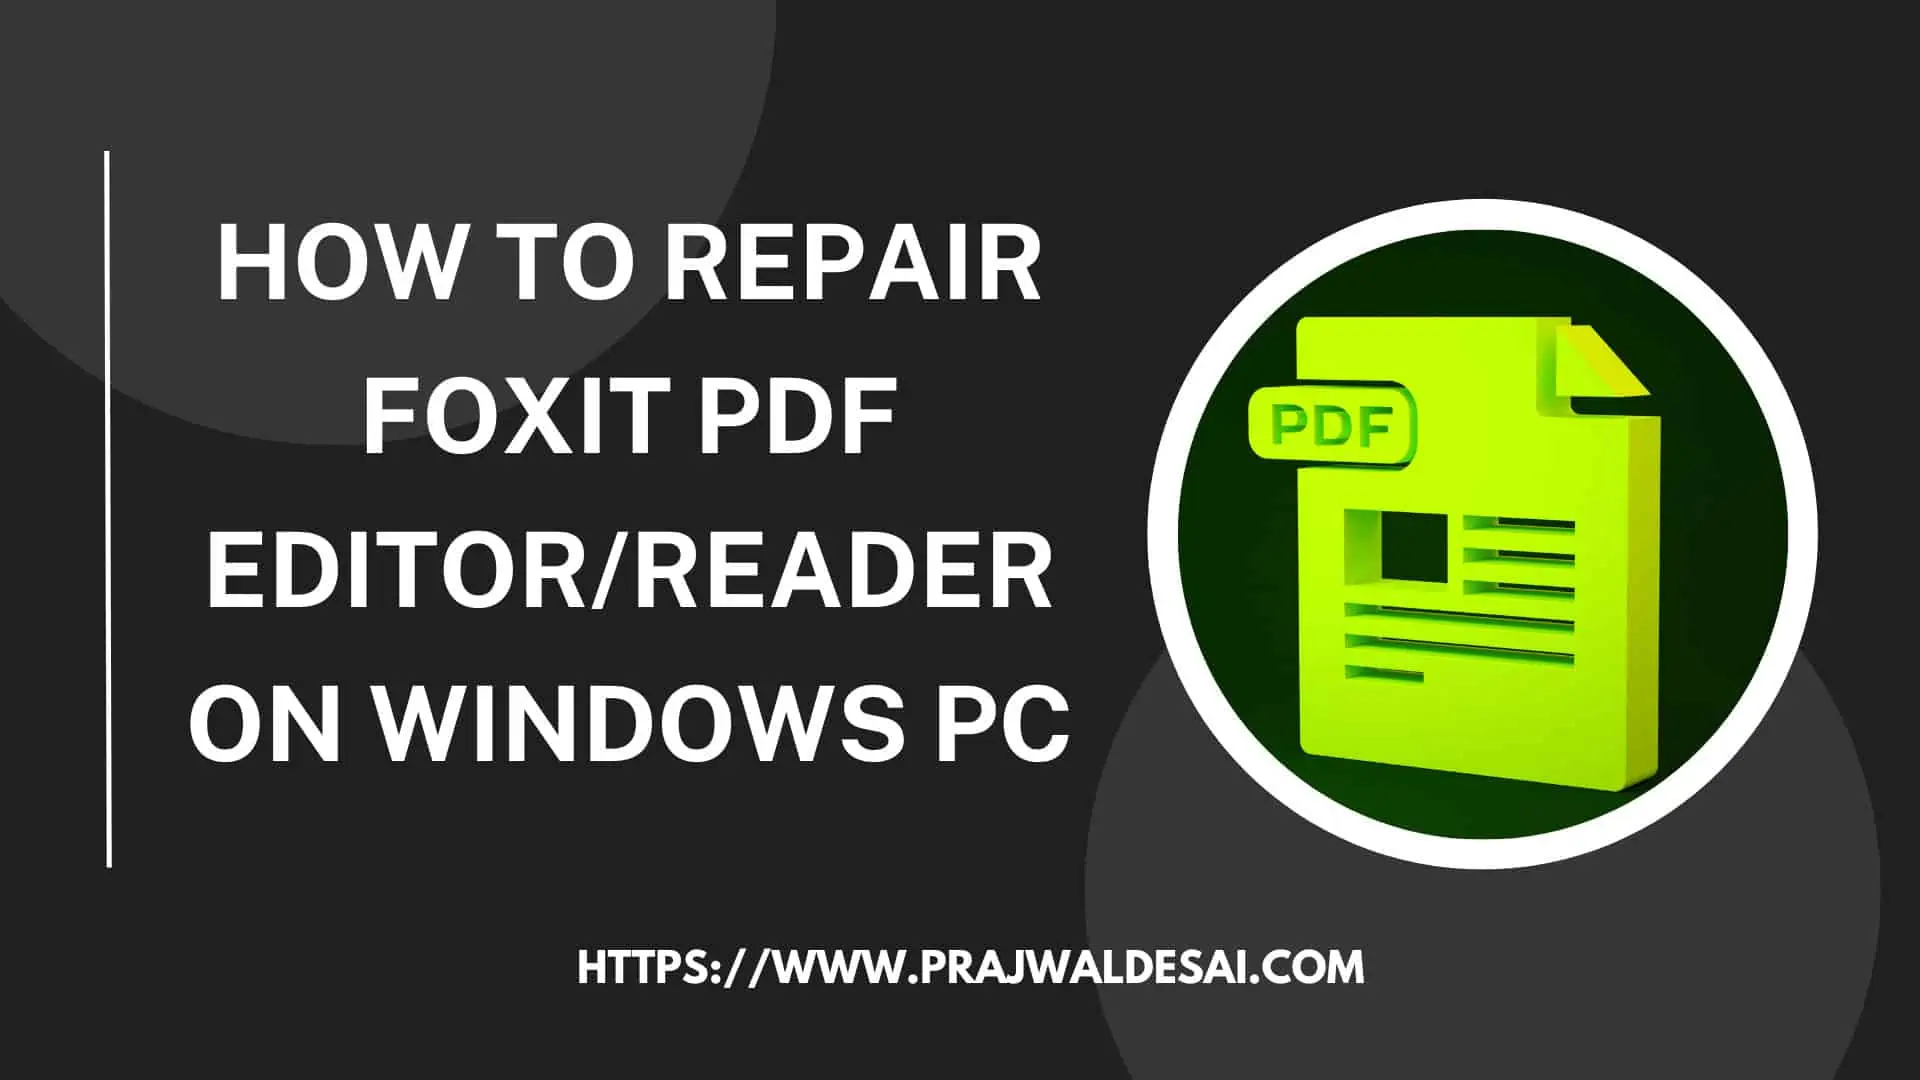 如何修复Foxit PDF编辑器/阅读器在Windows PC上